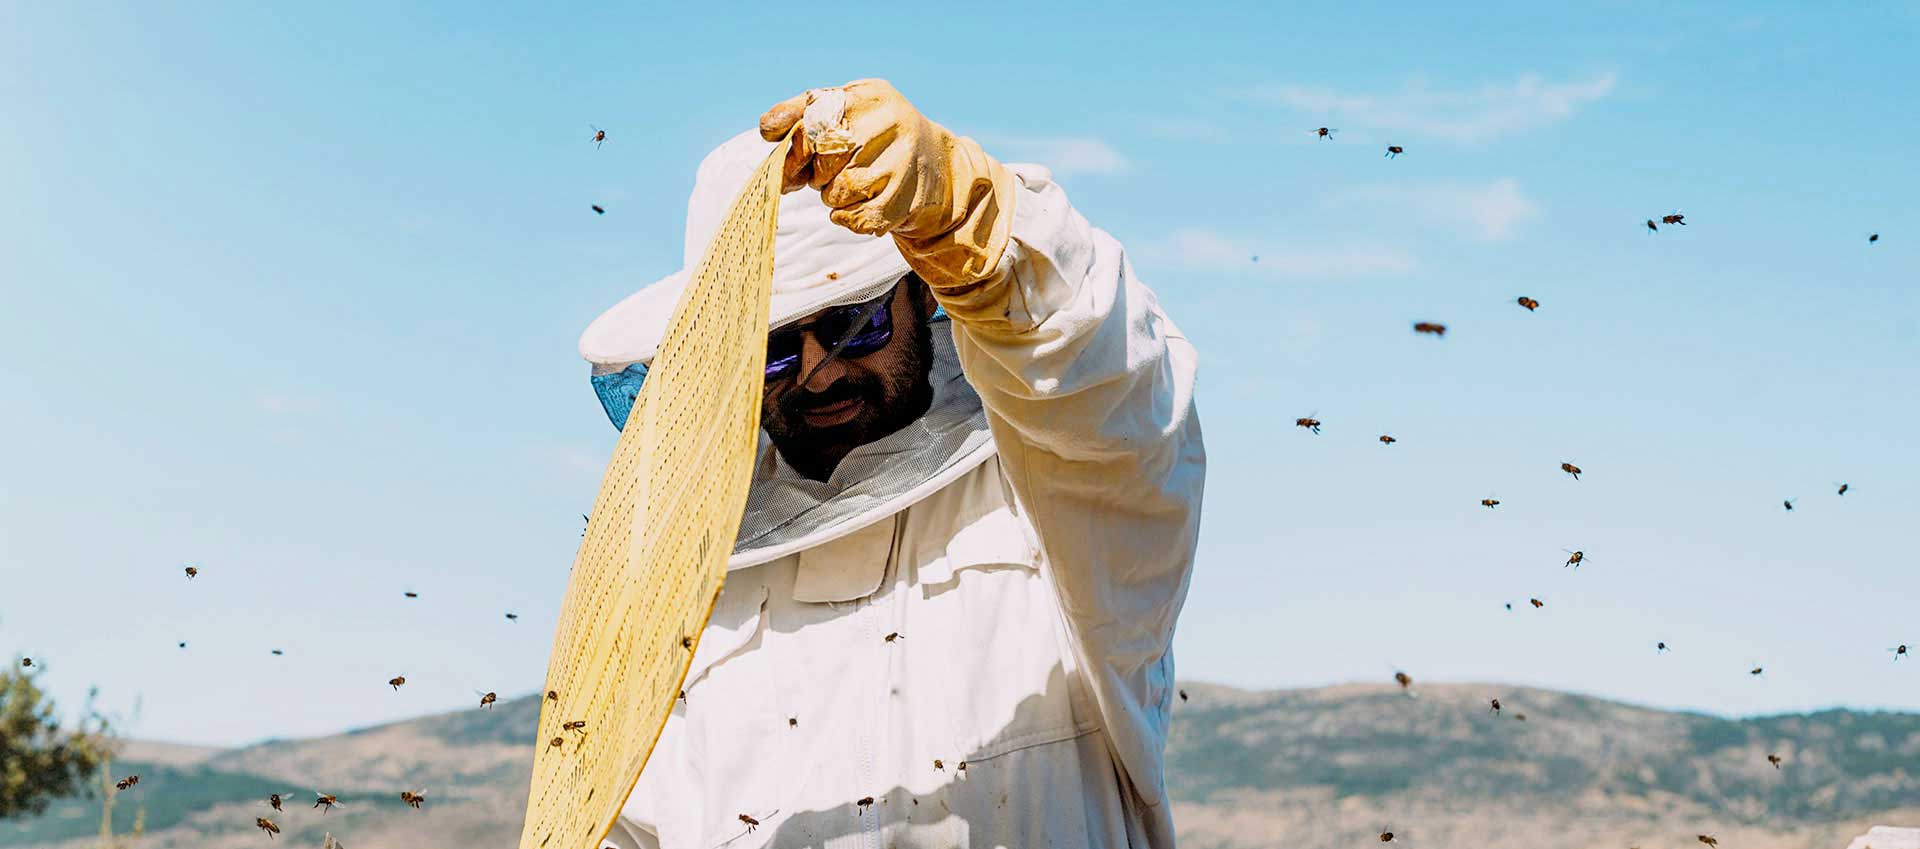 Proizvodnja meda